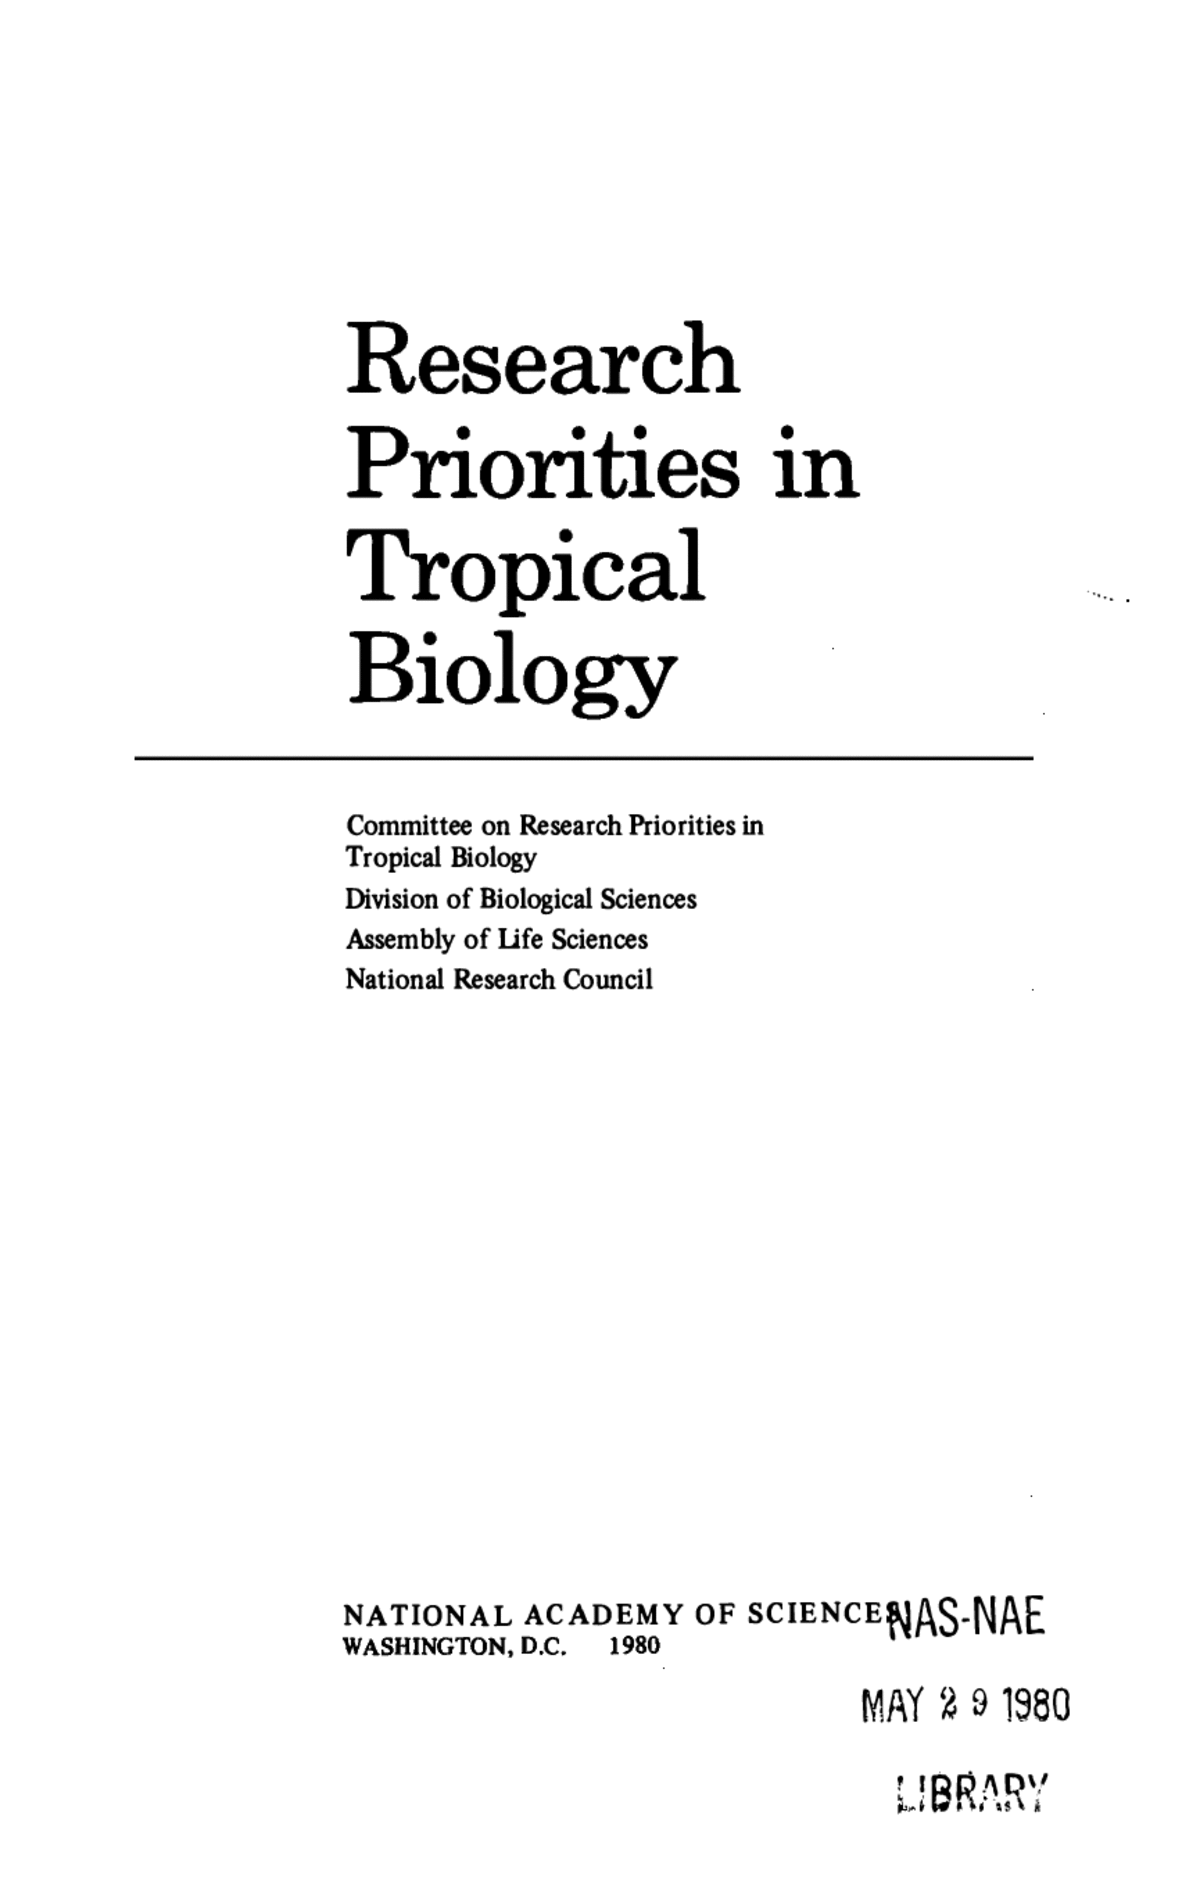 RESUMEN Y RECOMENDACIONES, Research Priorities in Tropical Biology